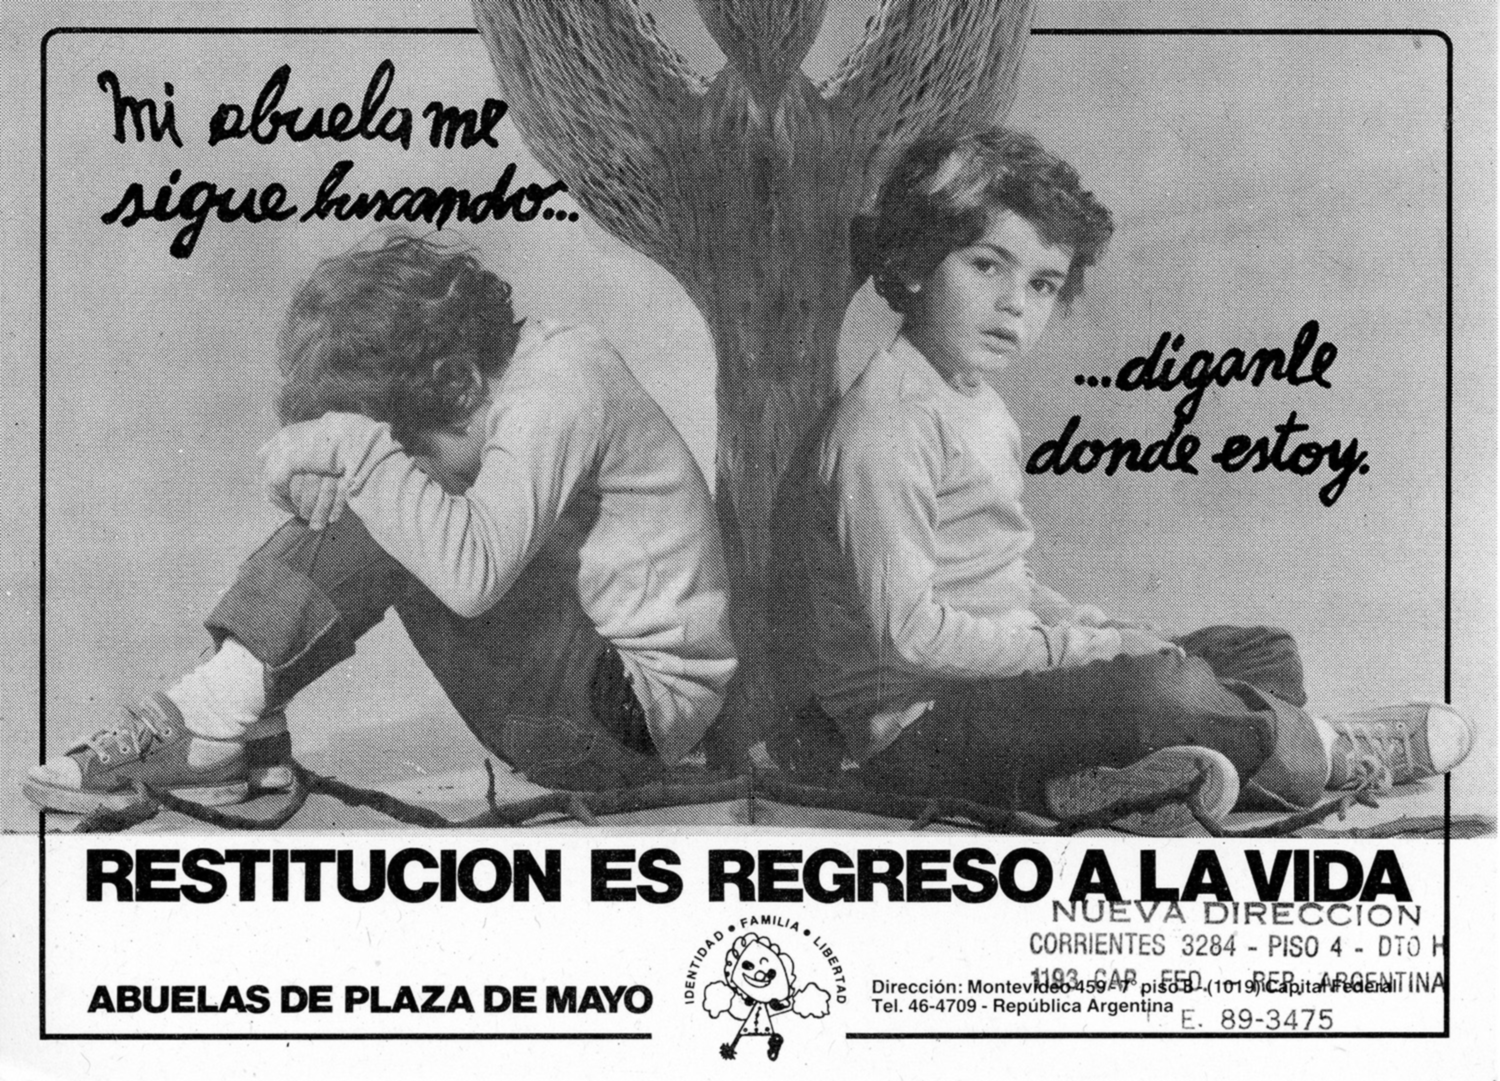 1986 Flyer by the Abuelas de Plaza de Mayo